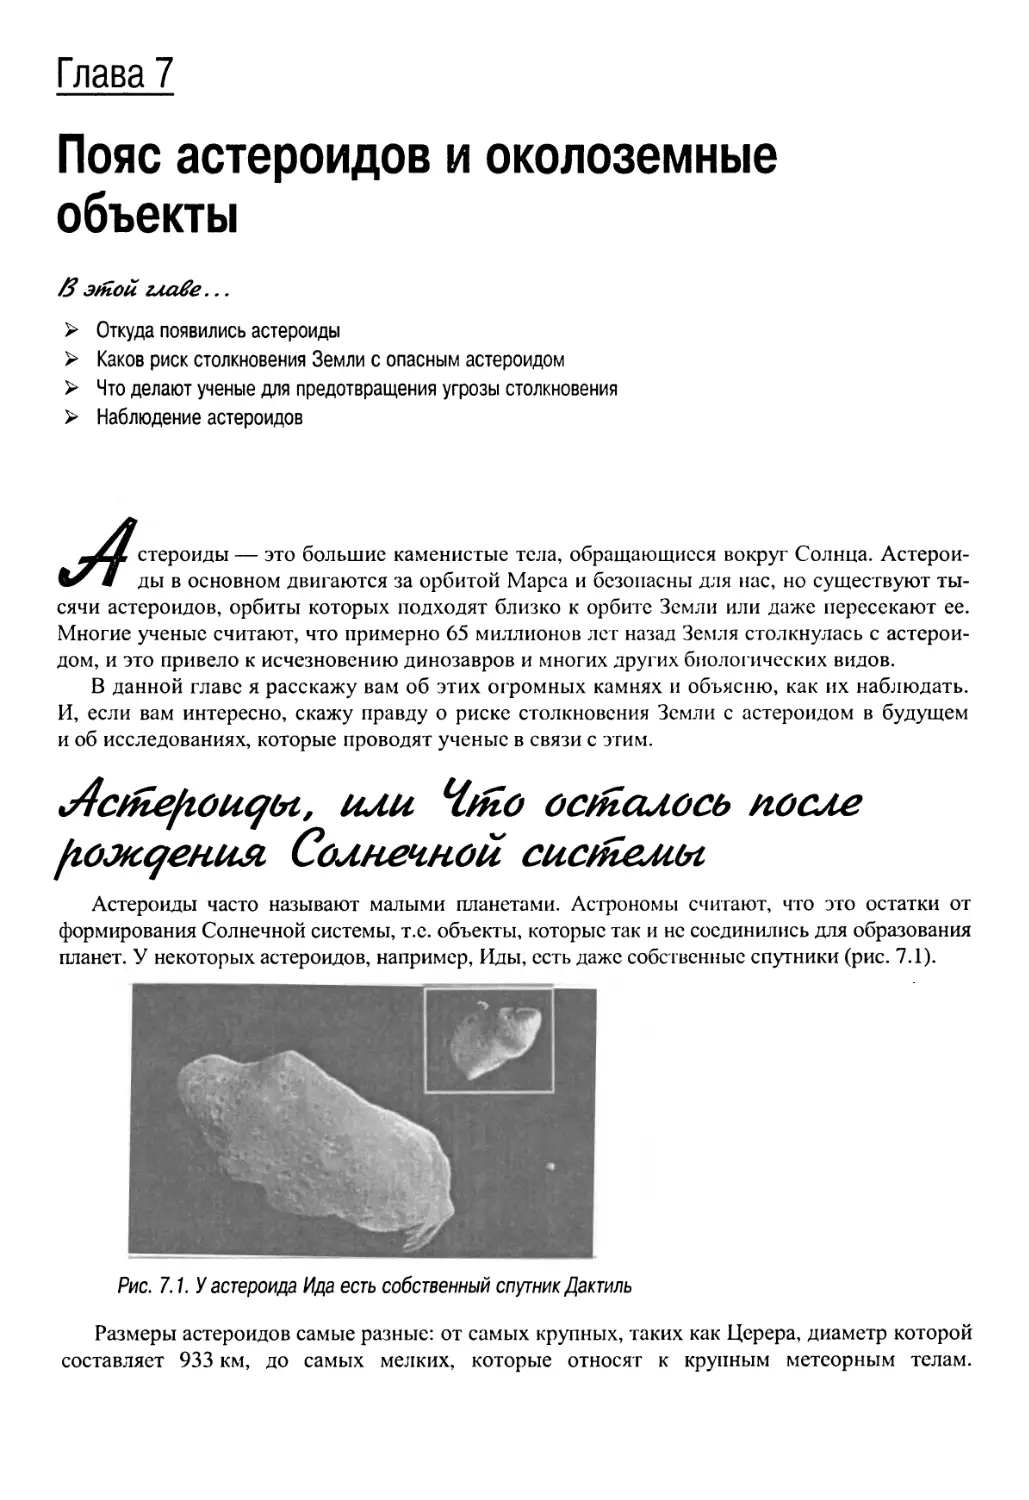 Глава 7. Пояс астероидов и околоземные объекты